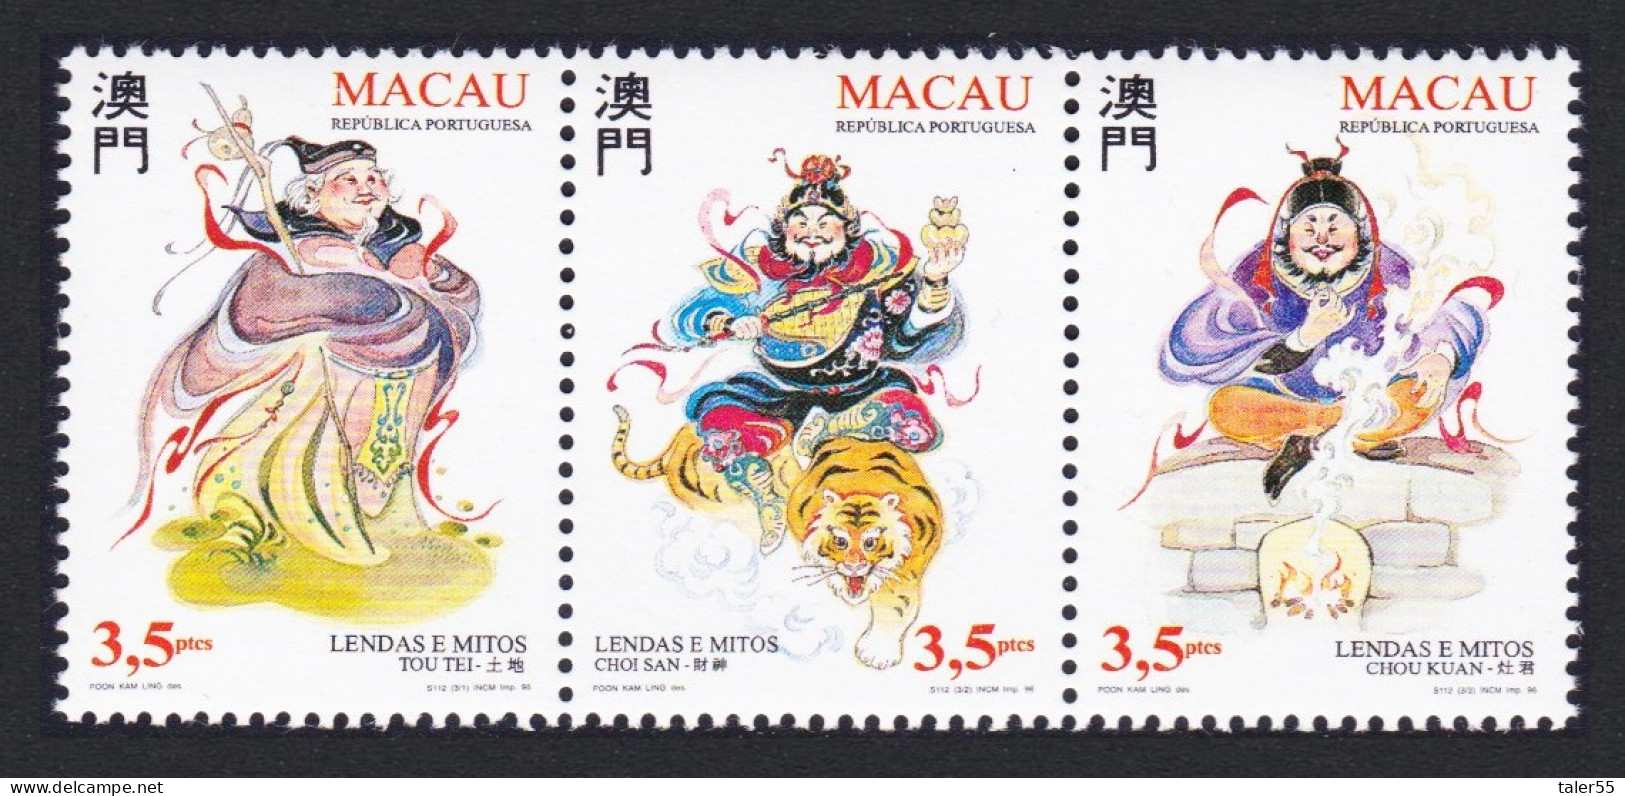 Macao Macau Legends And Myths 3rd Series Strip Of 3v 1996 MNH SG#930-932 Sc#819a - Nuevos